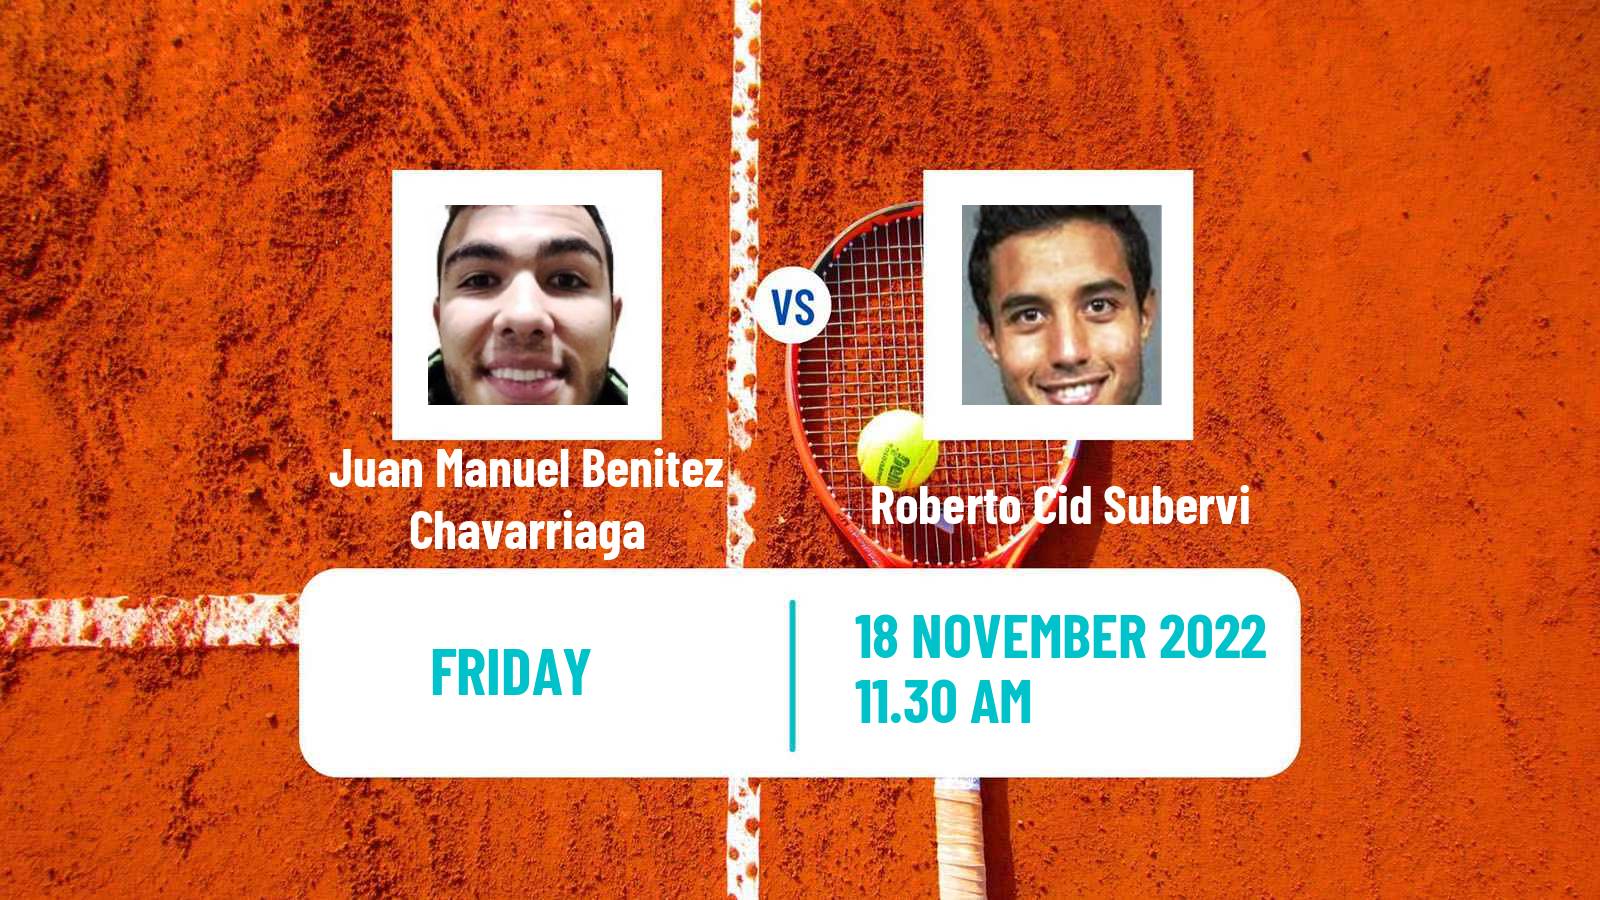 Tennis ITF Tournaments Juan Manuel Benitez Chavarriaga - Roberto Cid Subervi